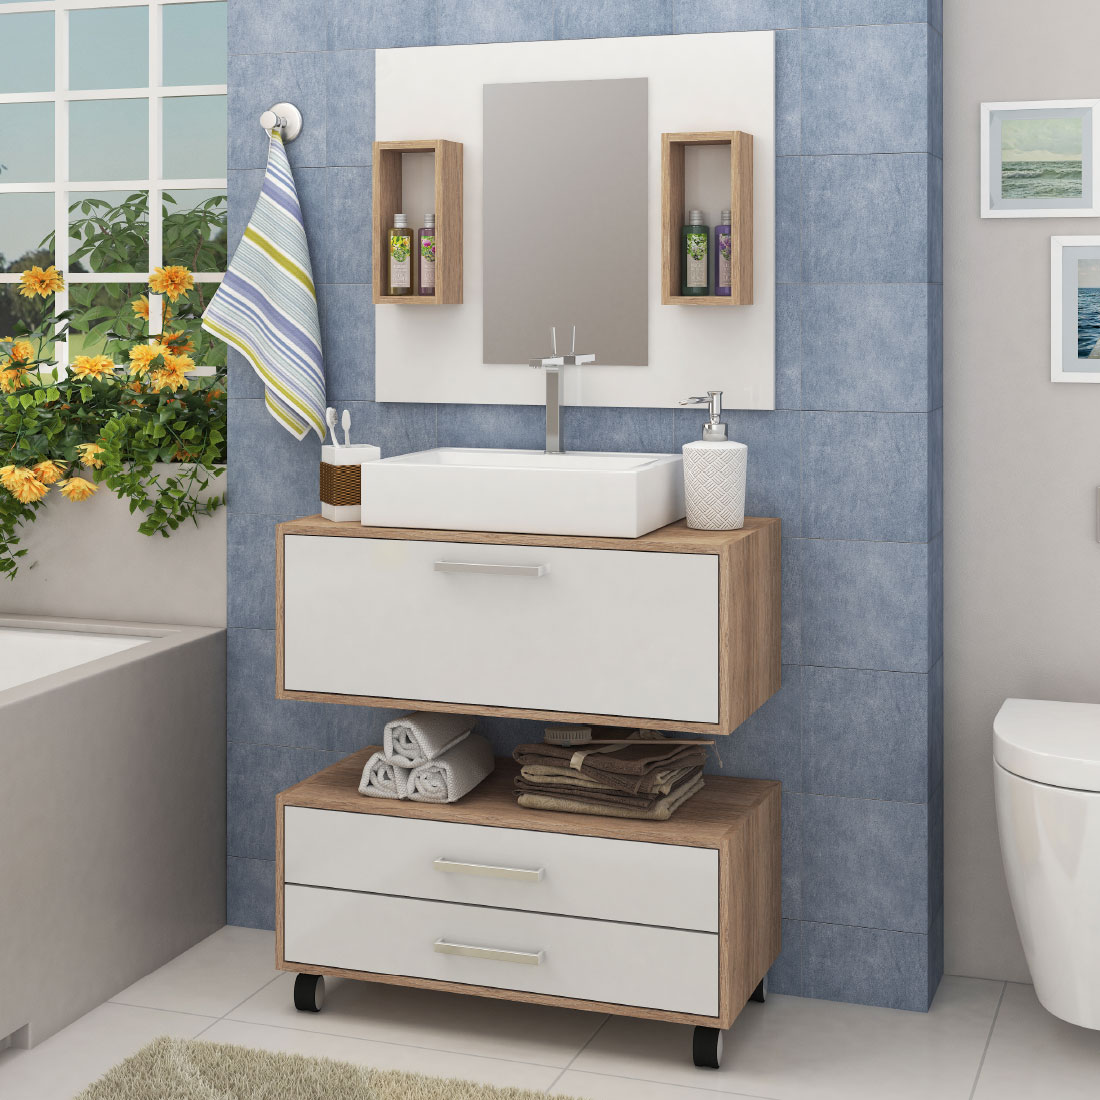 GB11 | Gabinete para banheiro com espelho, 1 porta e
2 gavetas. ACOMPANHA A CUBA